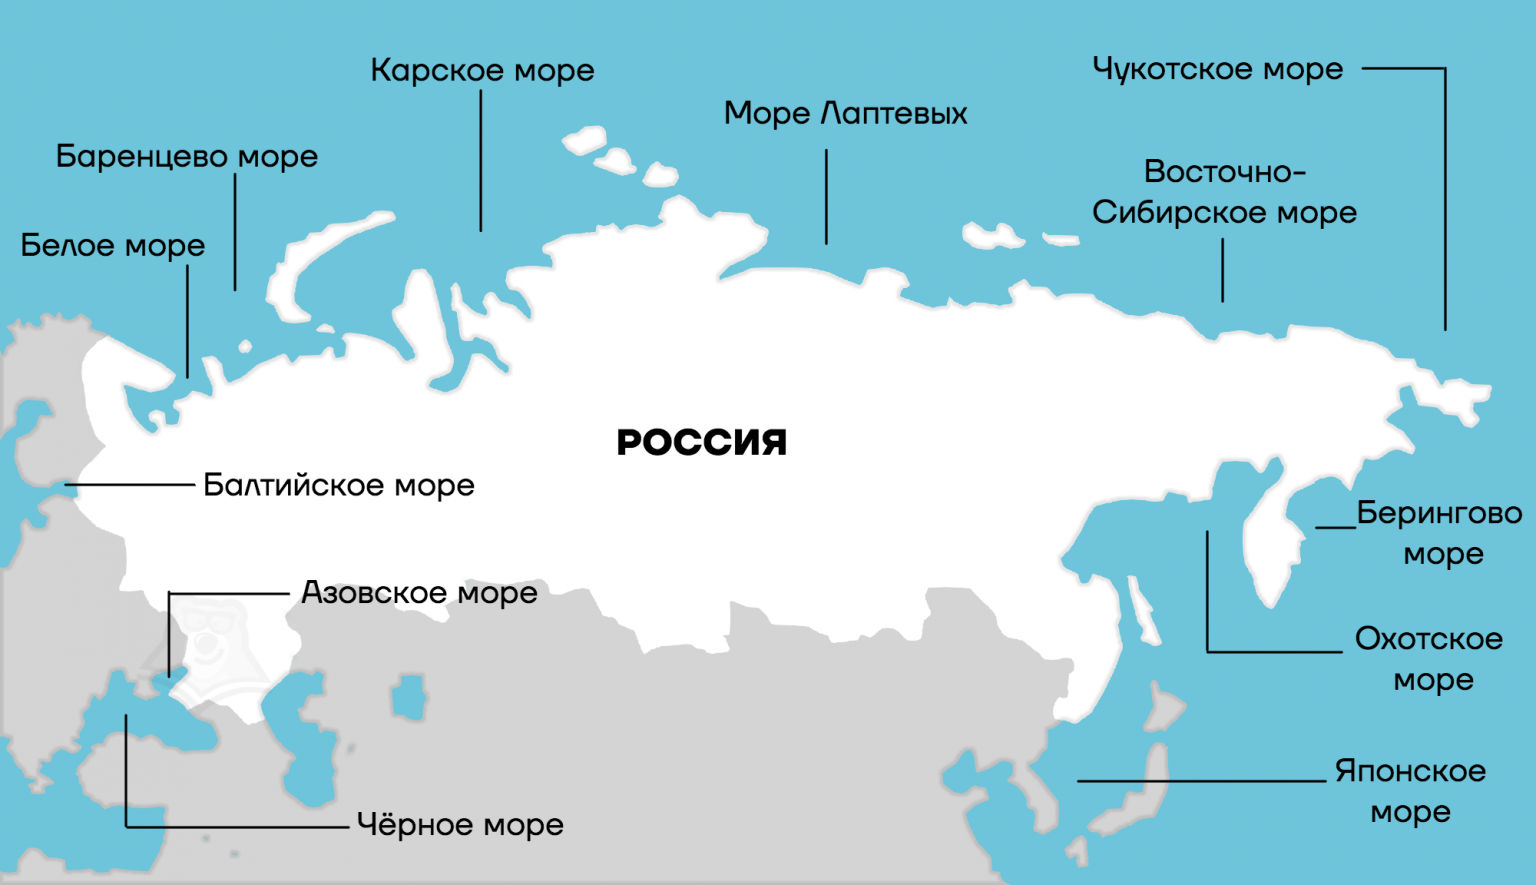 Моря омывающие берега россии карта